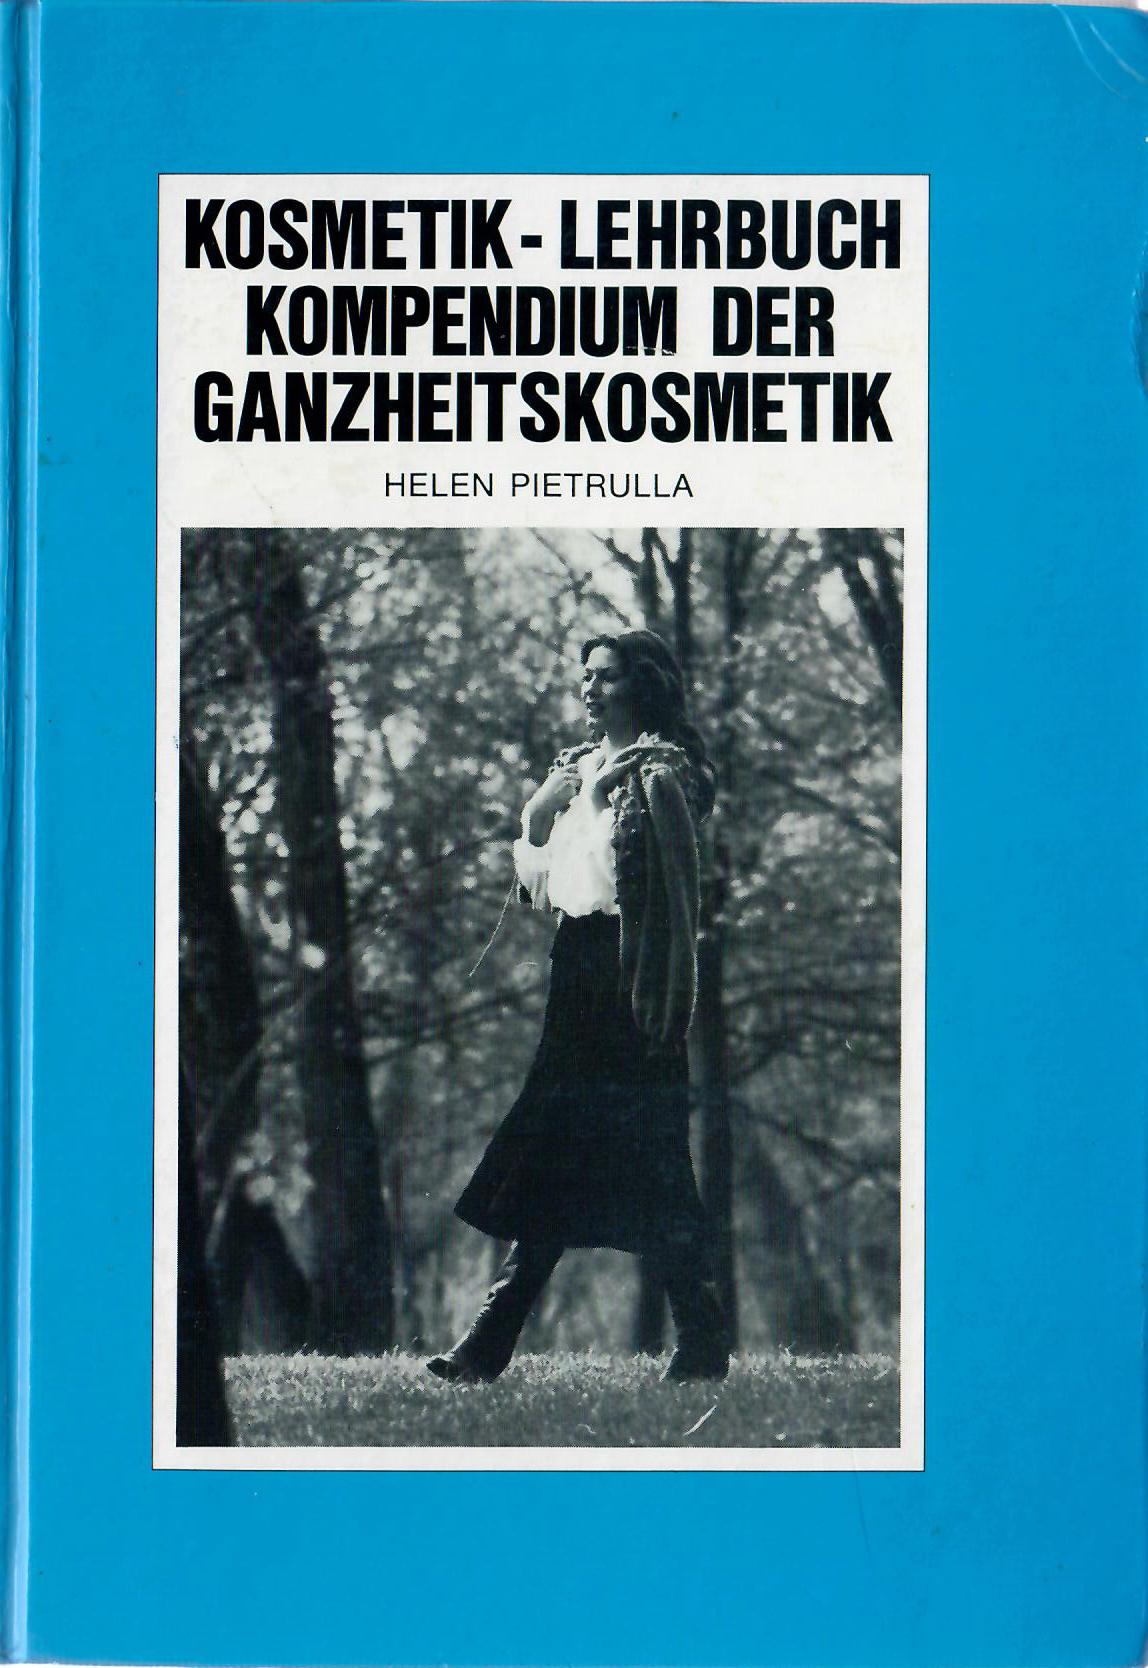 Pietrulla, Helen   : Kompendium der Ganzheitskosmetik (Kosmetik Lehrbuch, Blaue Reihe 5) - Otto Hoffmanns Verlag 1981